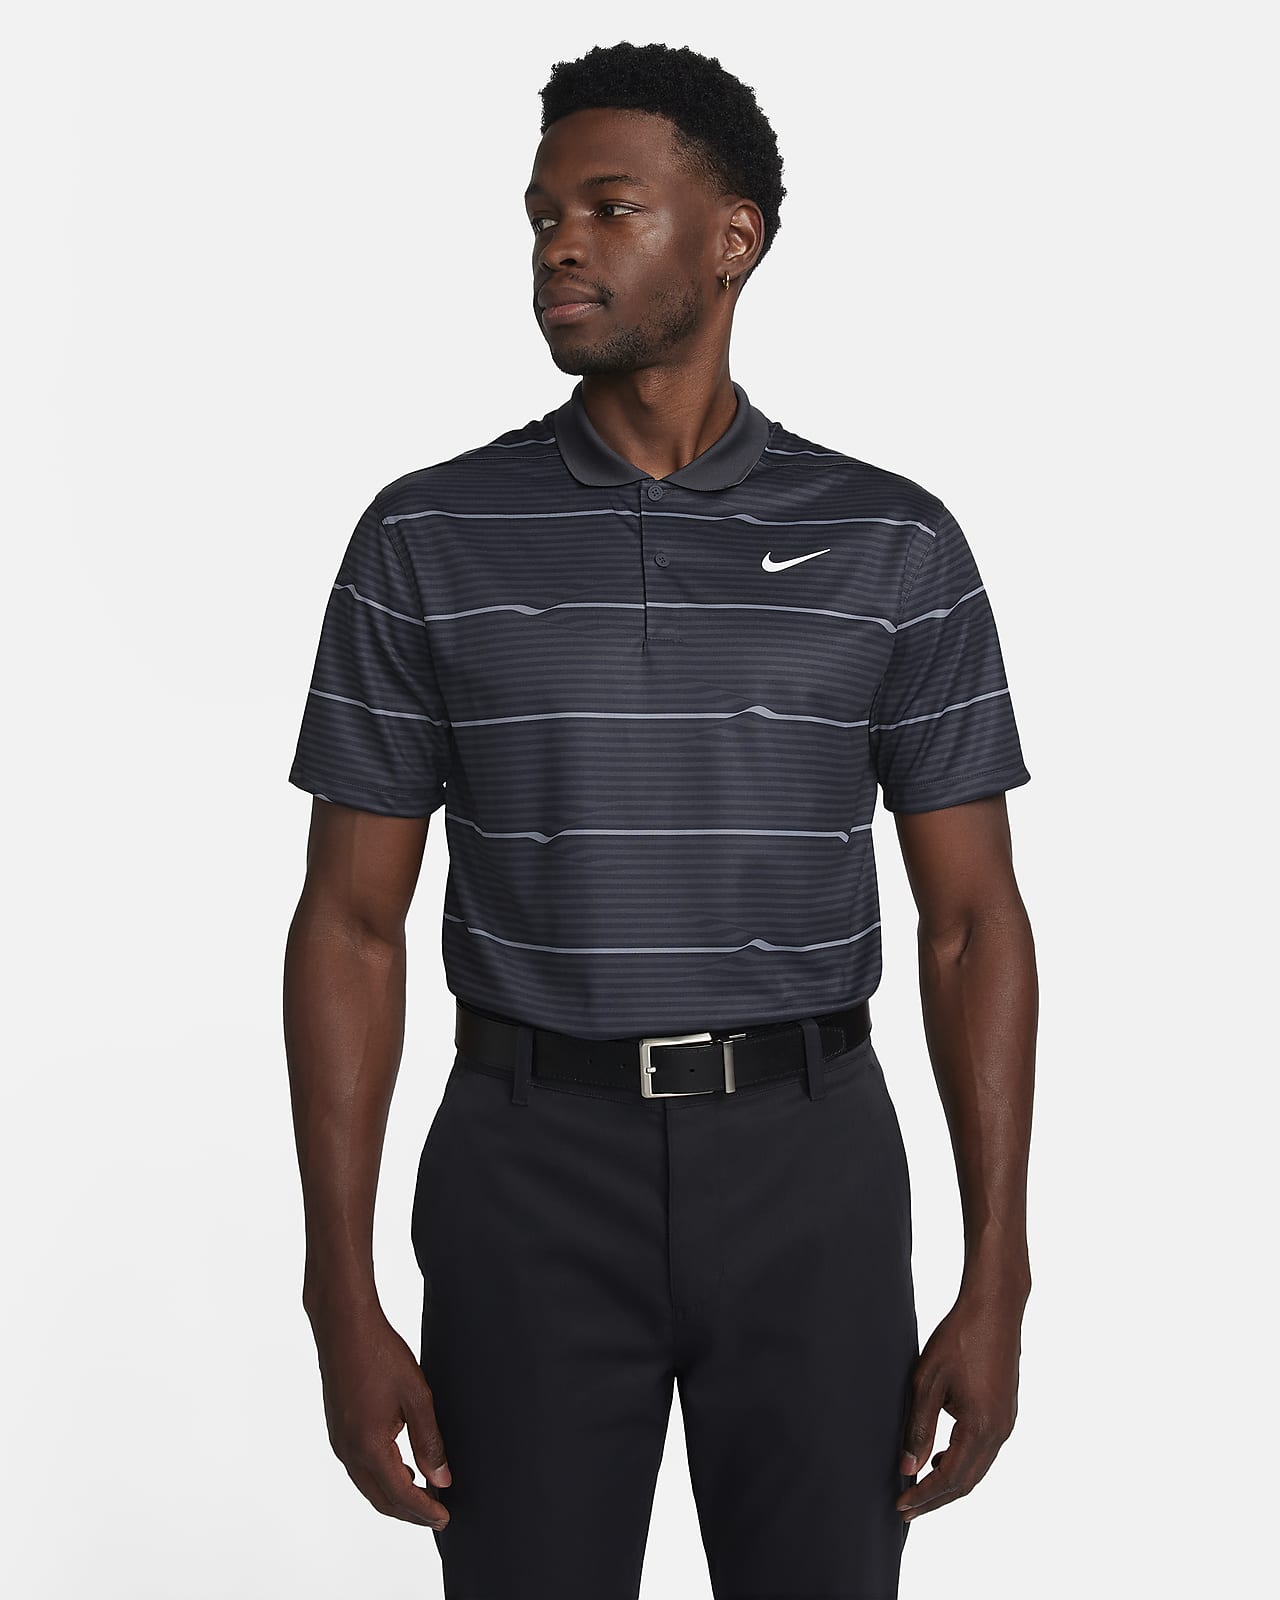 Ανδρική μπλούζα πόλο για γκολφ Dri-FIT Nike Victory